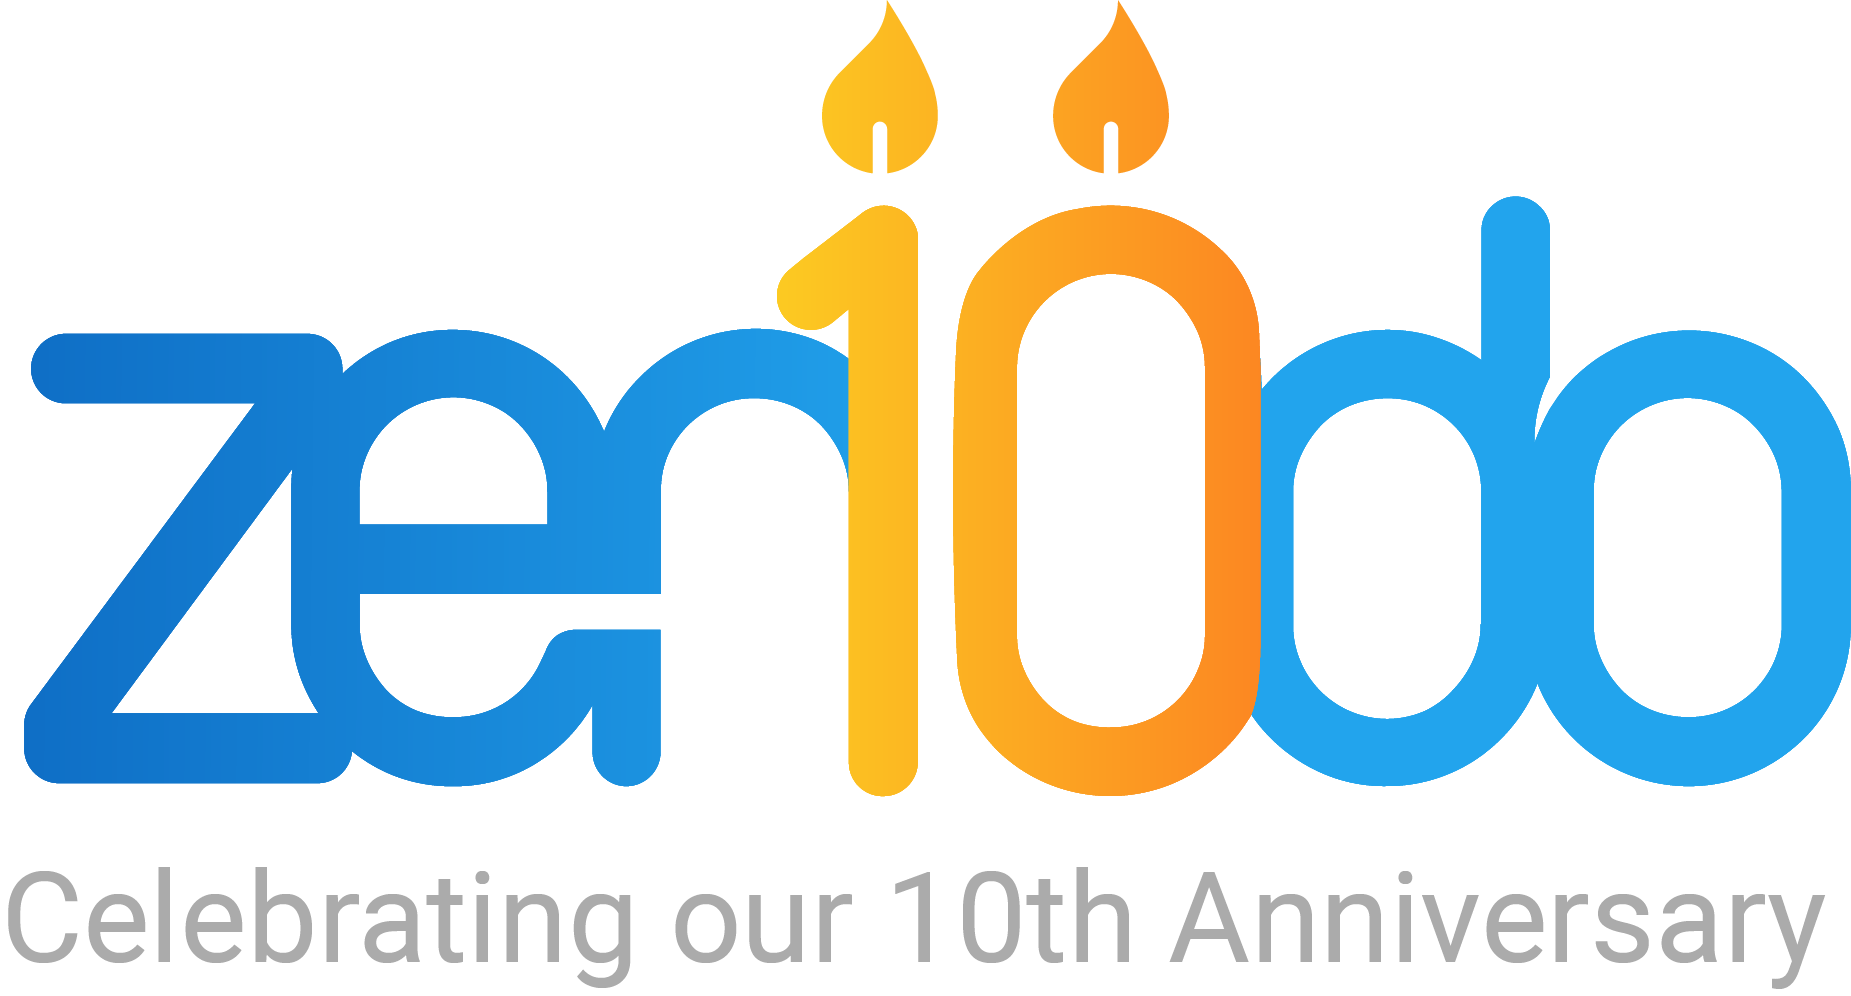 10th anniversary of Zenodo